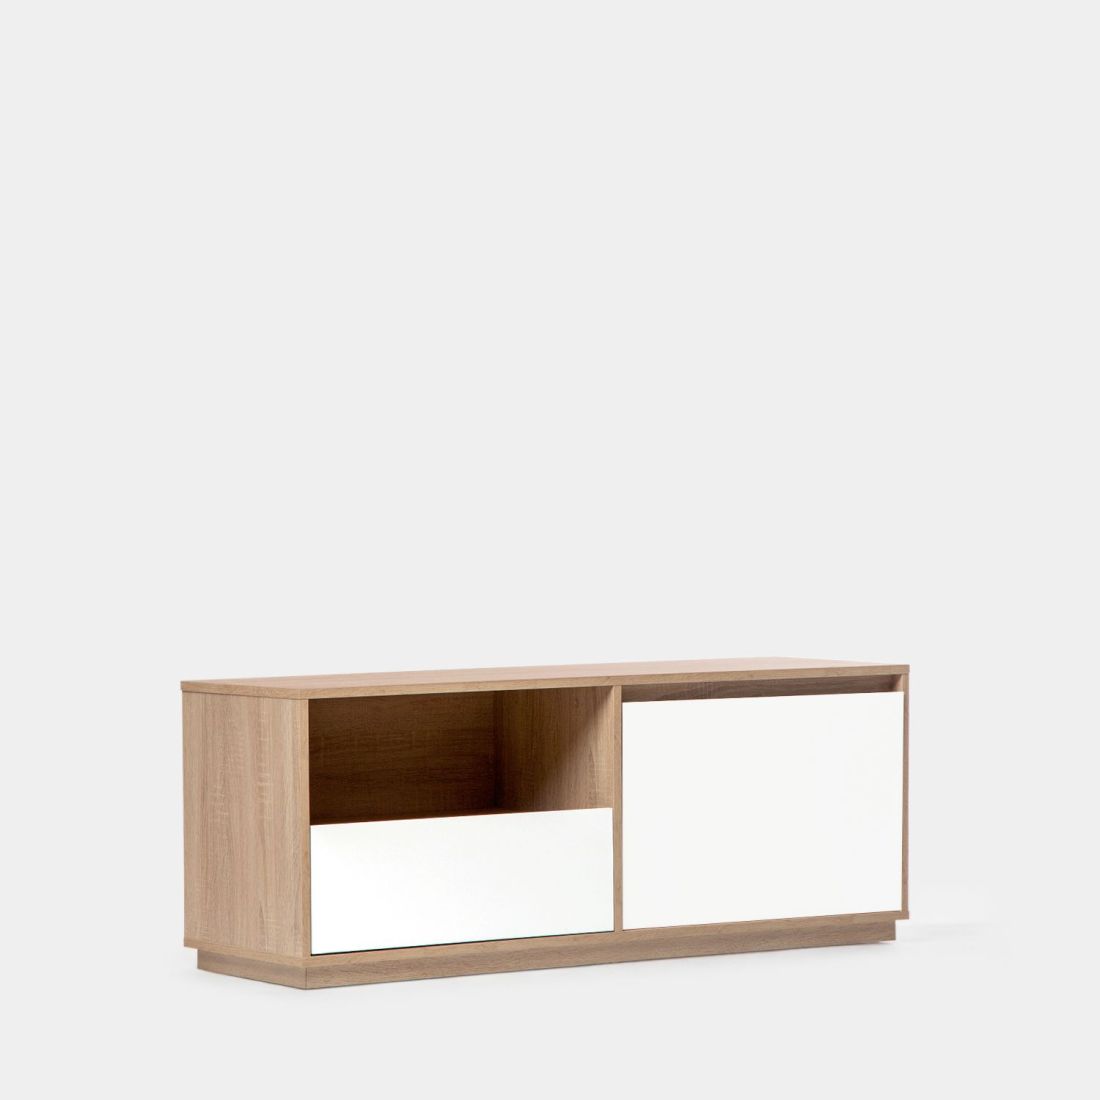 El mueble TV Oslo de 120 cm para salón te cautivará. Es de diseño propio y su estilo predominante es el nórdico